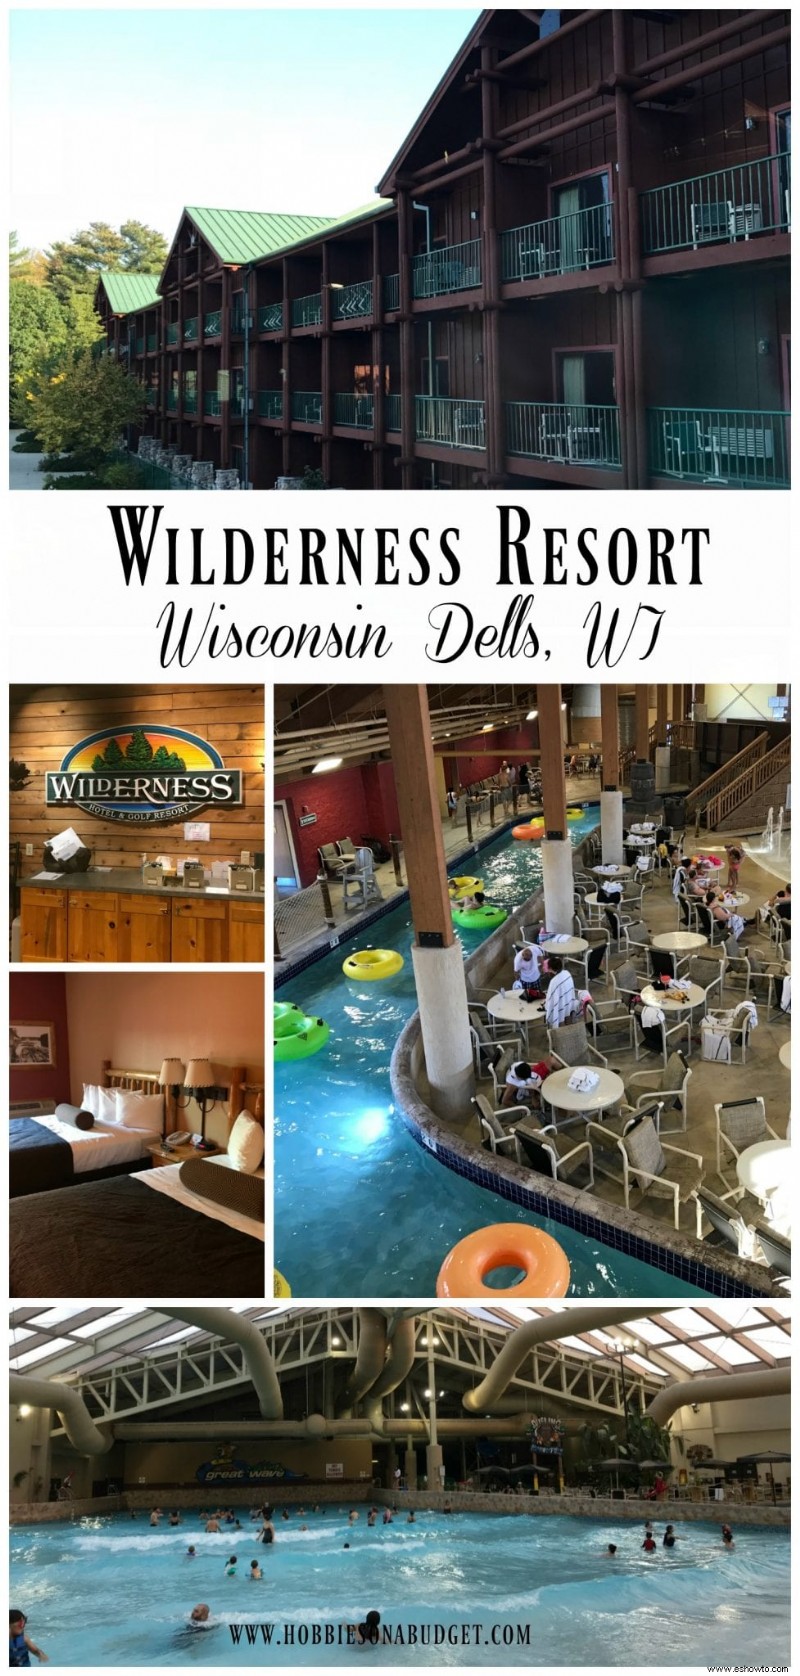 Wilderness Resort en Wisconsin Dells!